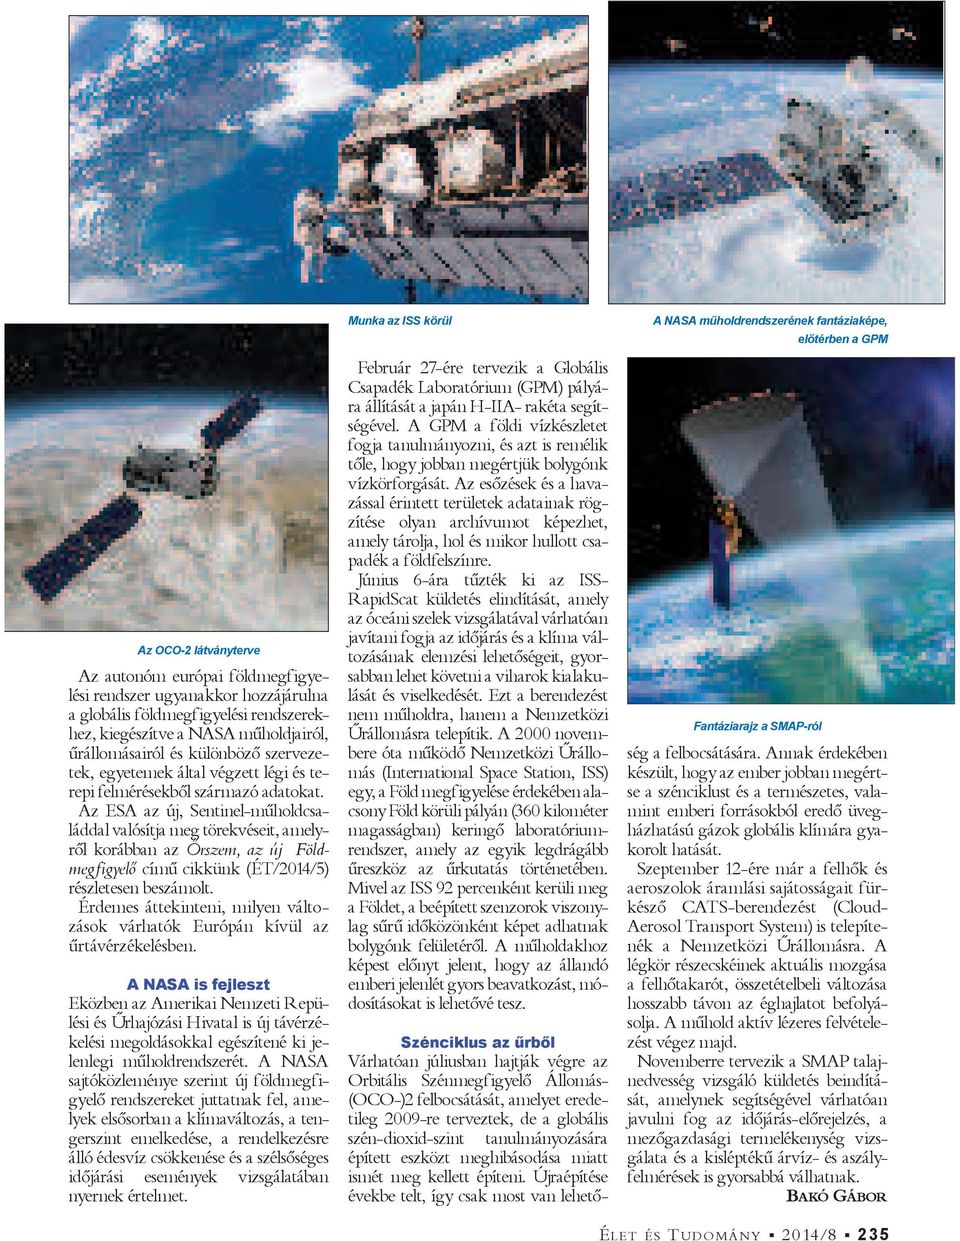 Az ESA az új, Sentinel-mű hold családdal valósítja meg törekvéseit, amelyről korábban az Őrszem, az új Földmegfigyelő című cikkünk (ÉT/2014/5) részletesen beszámolt.